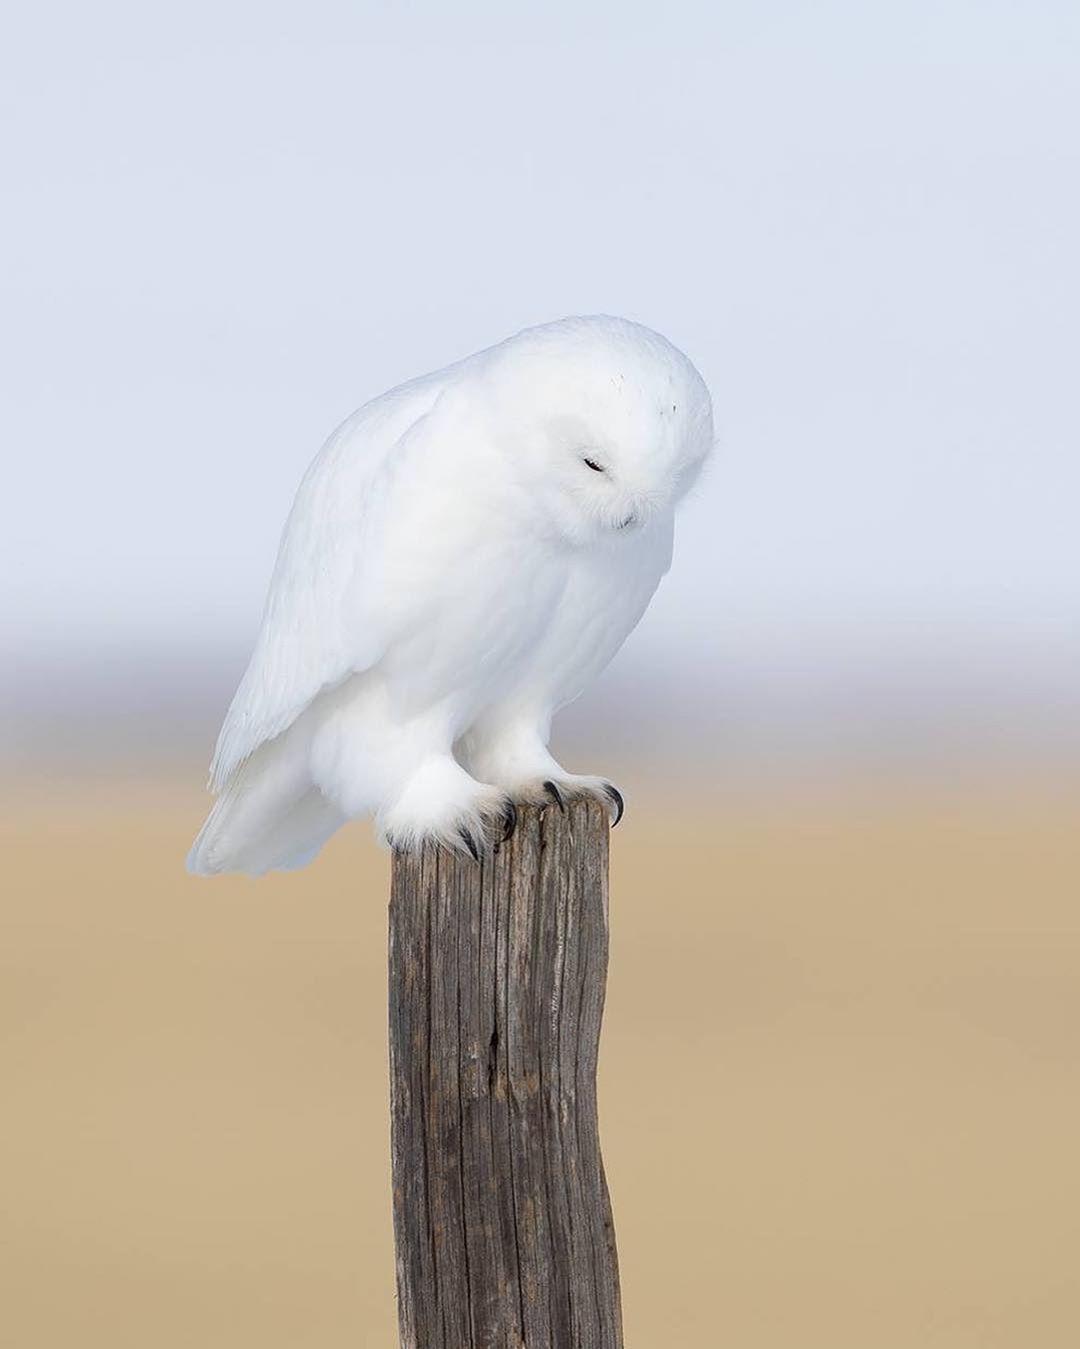  白色精灵雪鸮，来自摄影师Johnny Salomonsson。 